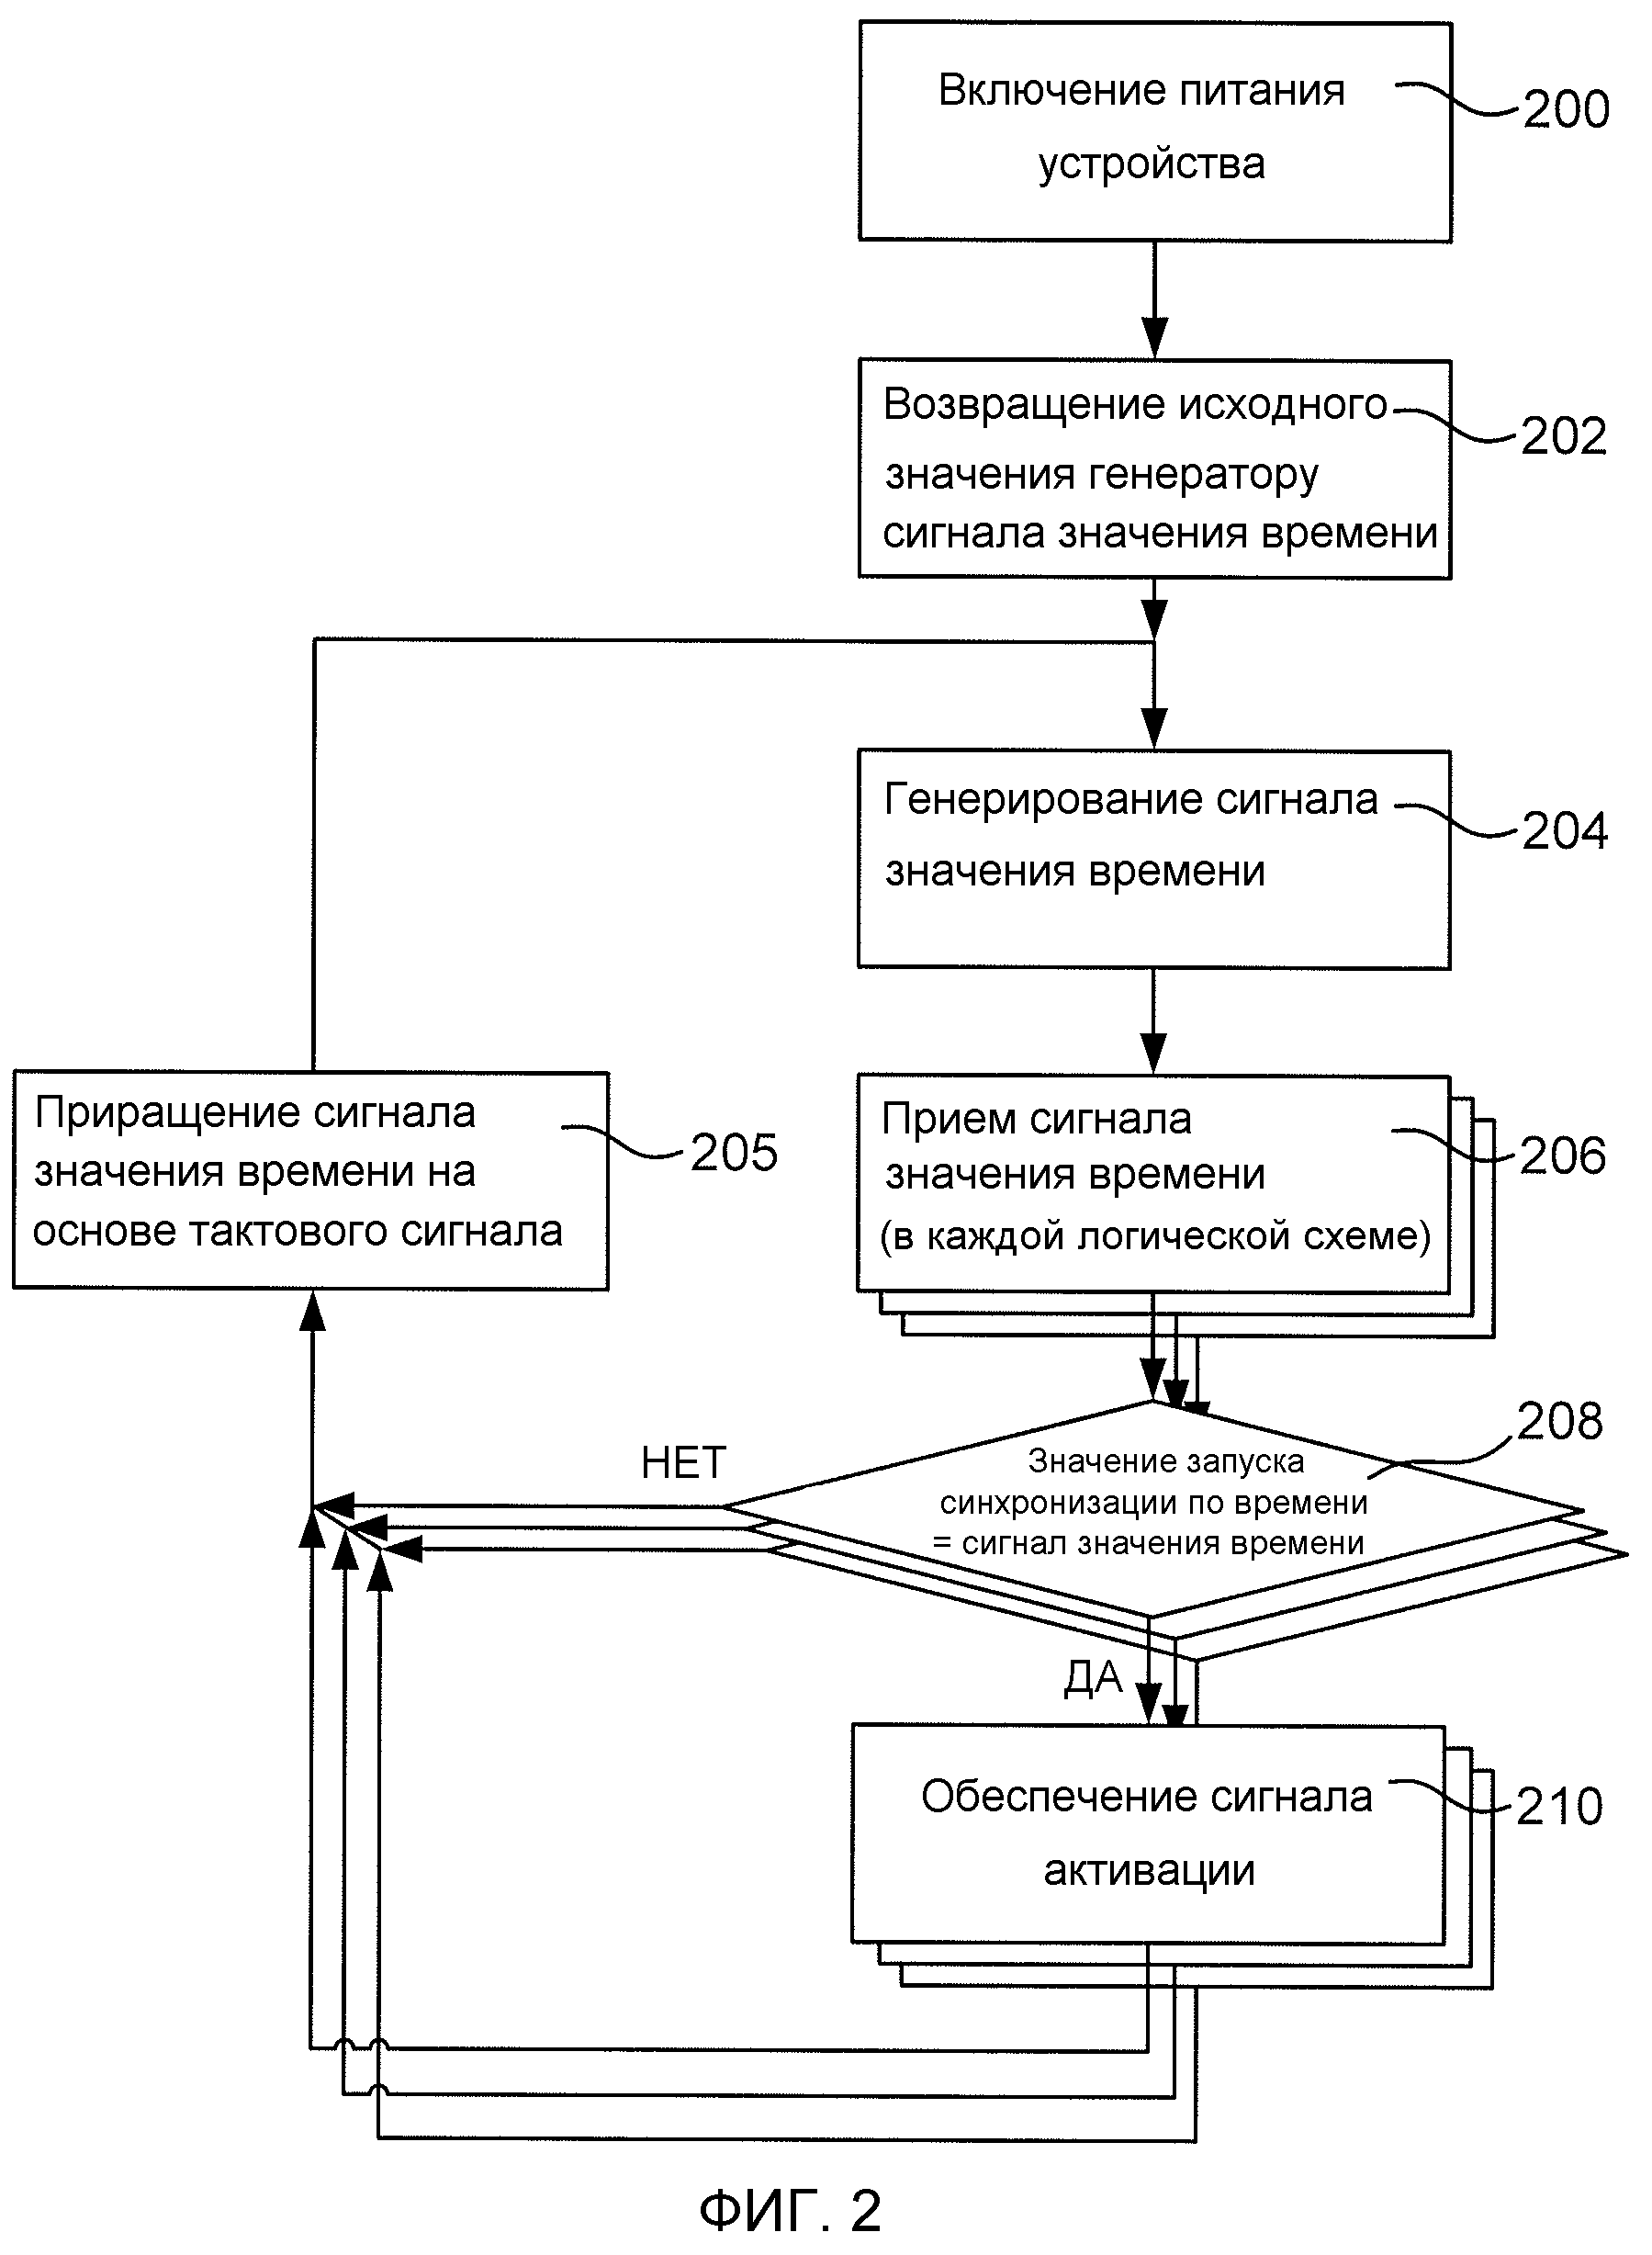 Как организовано электропитание центрального процессорного устройства цпу л